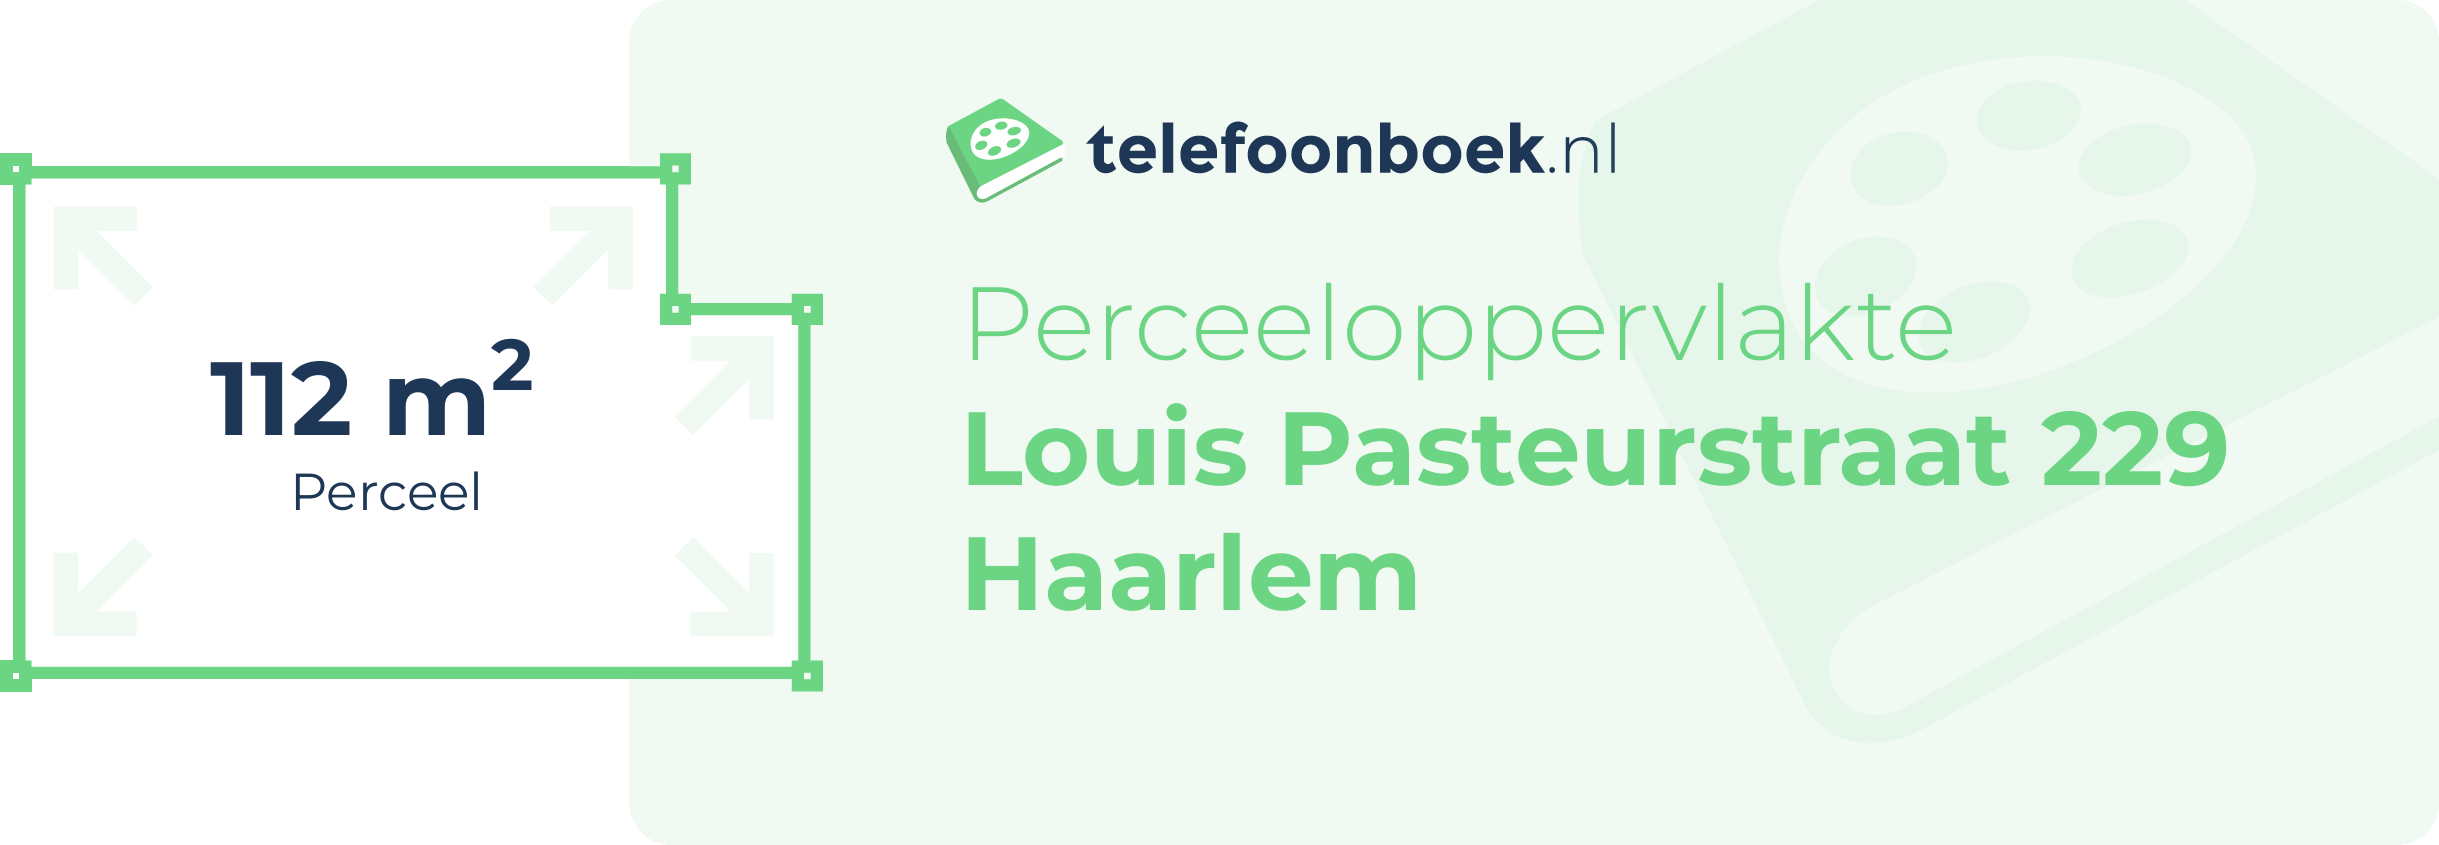 Perceeloppervlakte Louis Pasteurstraat 229 Haarlem